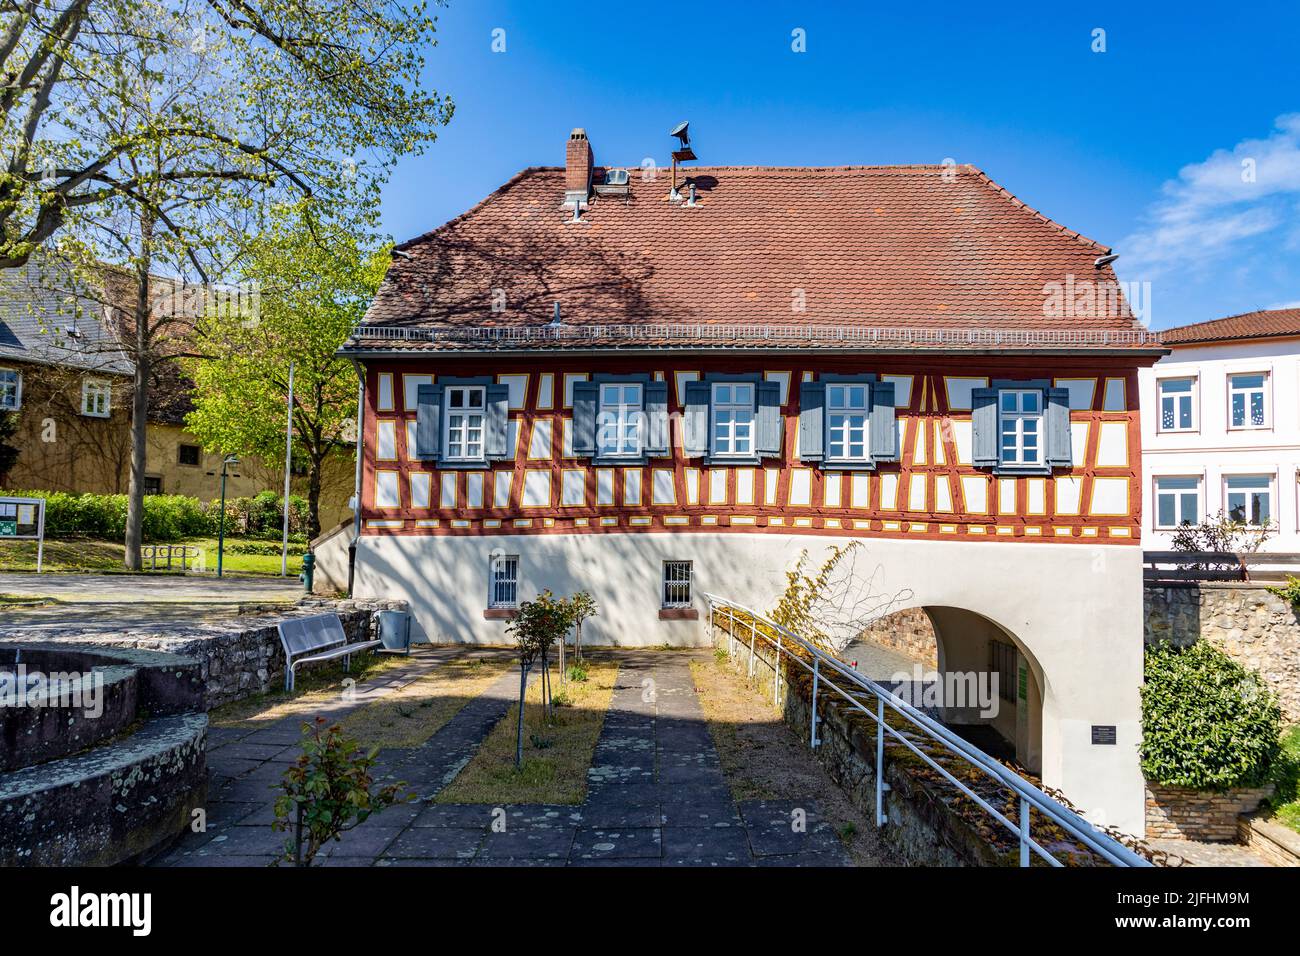 Hochheim, Alemania - 25 de abril de 2021: Antigua casa de sacerdotes con entramado de madera en Hochheim. Actualmente es propiedad de la ciudad de Hochheim. Foto de stock